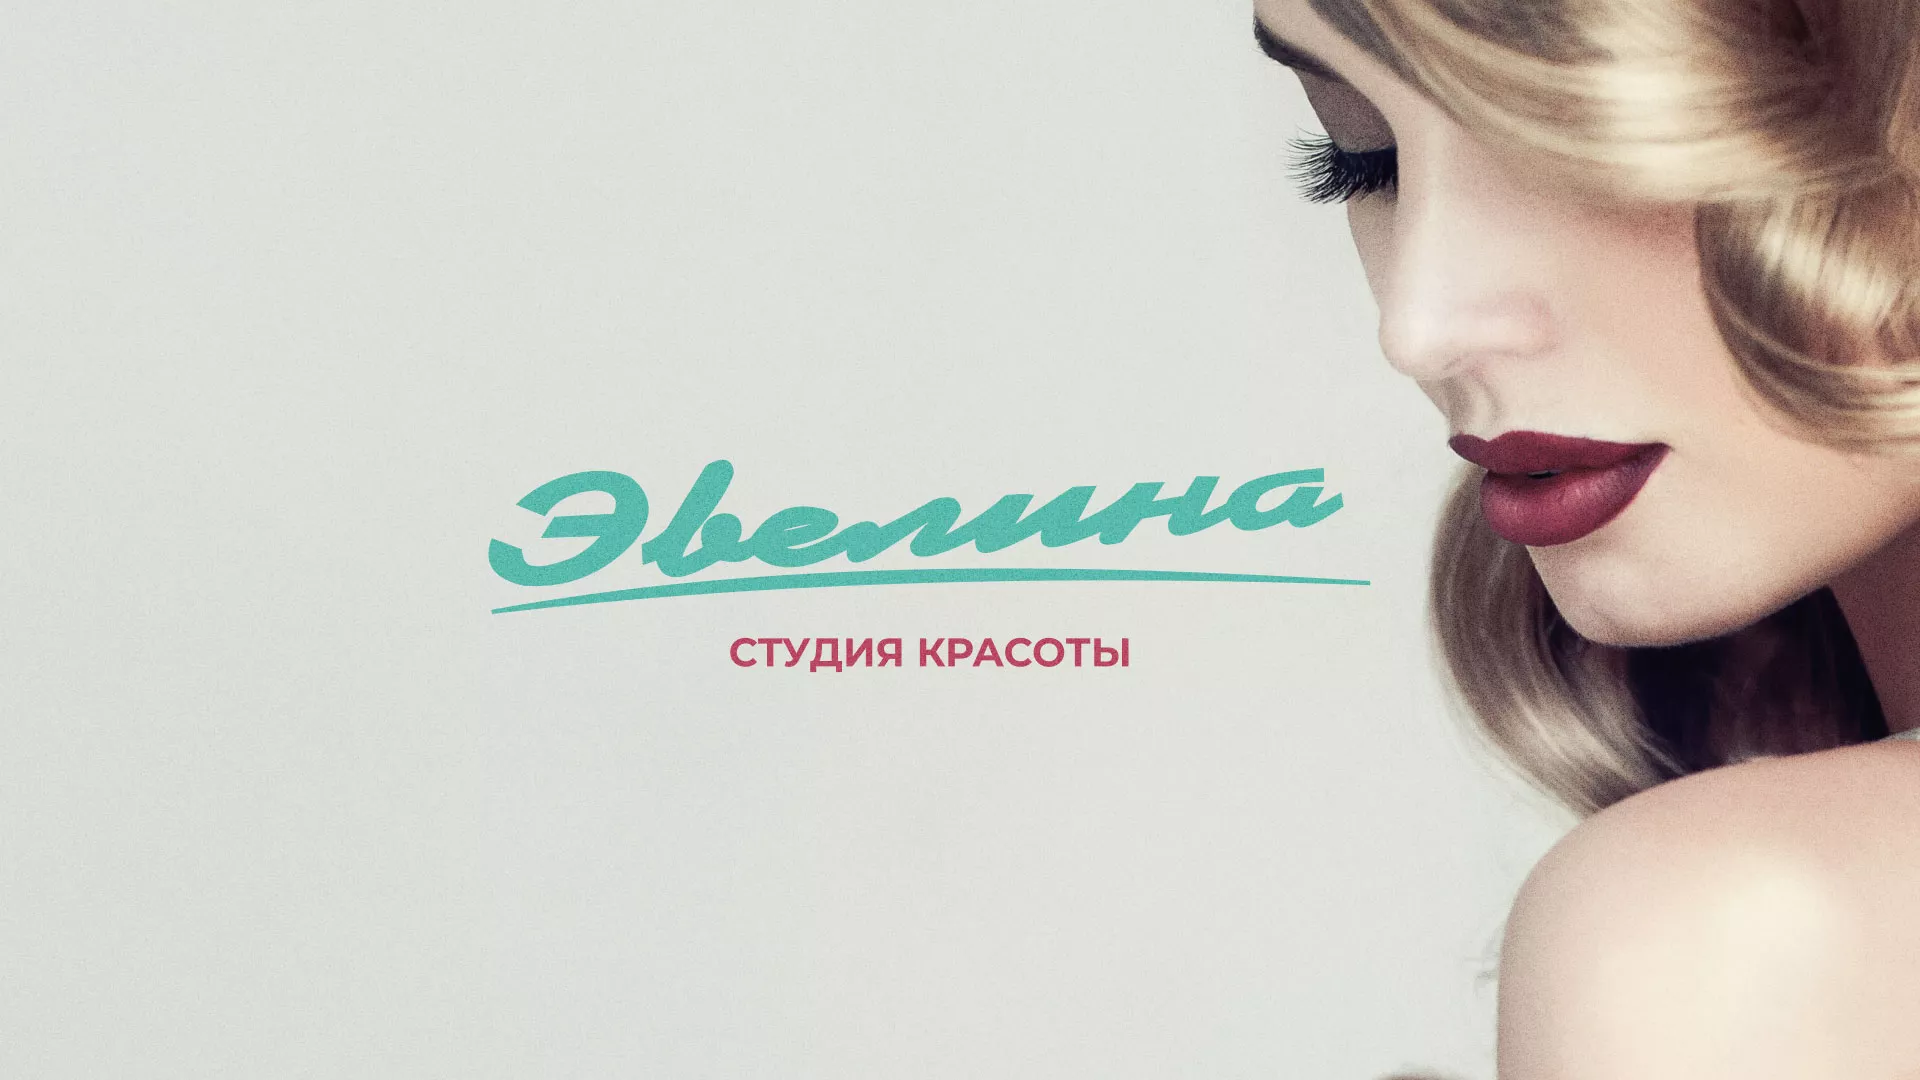 Разработка сайта для салона красоты «Эвелина» в Весьегонске